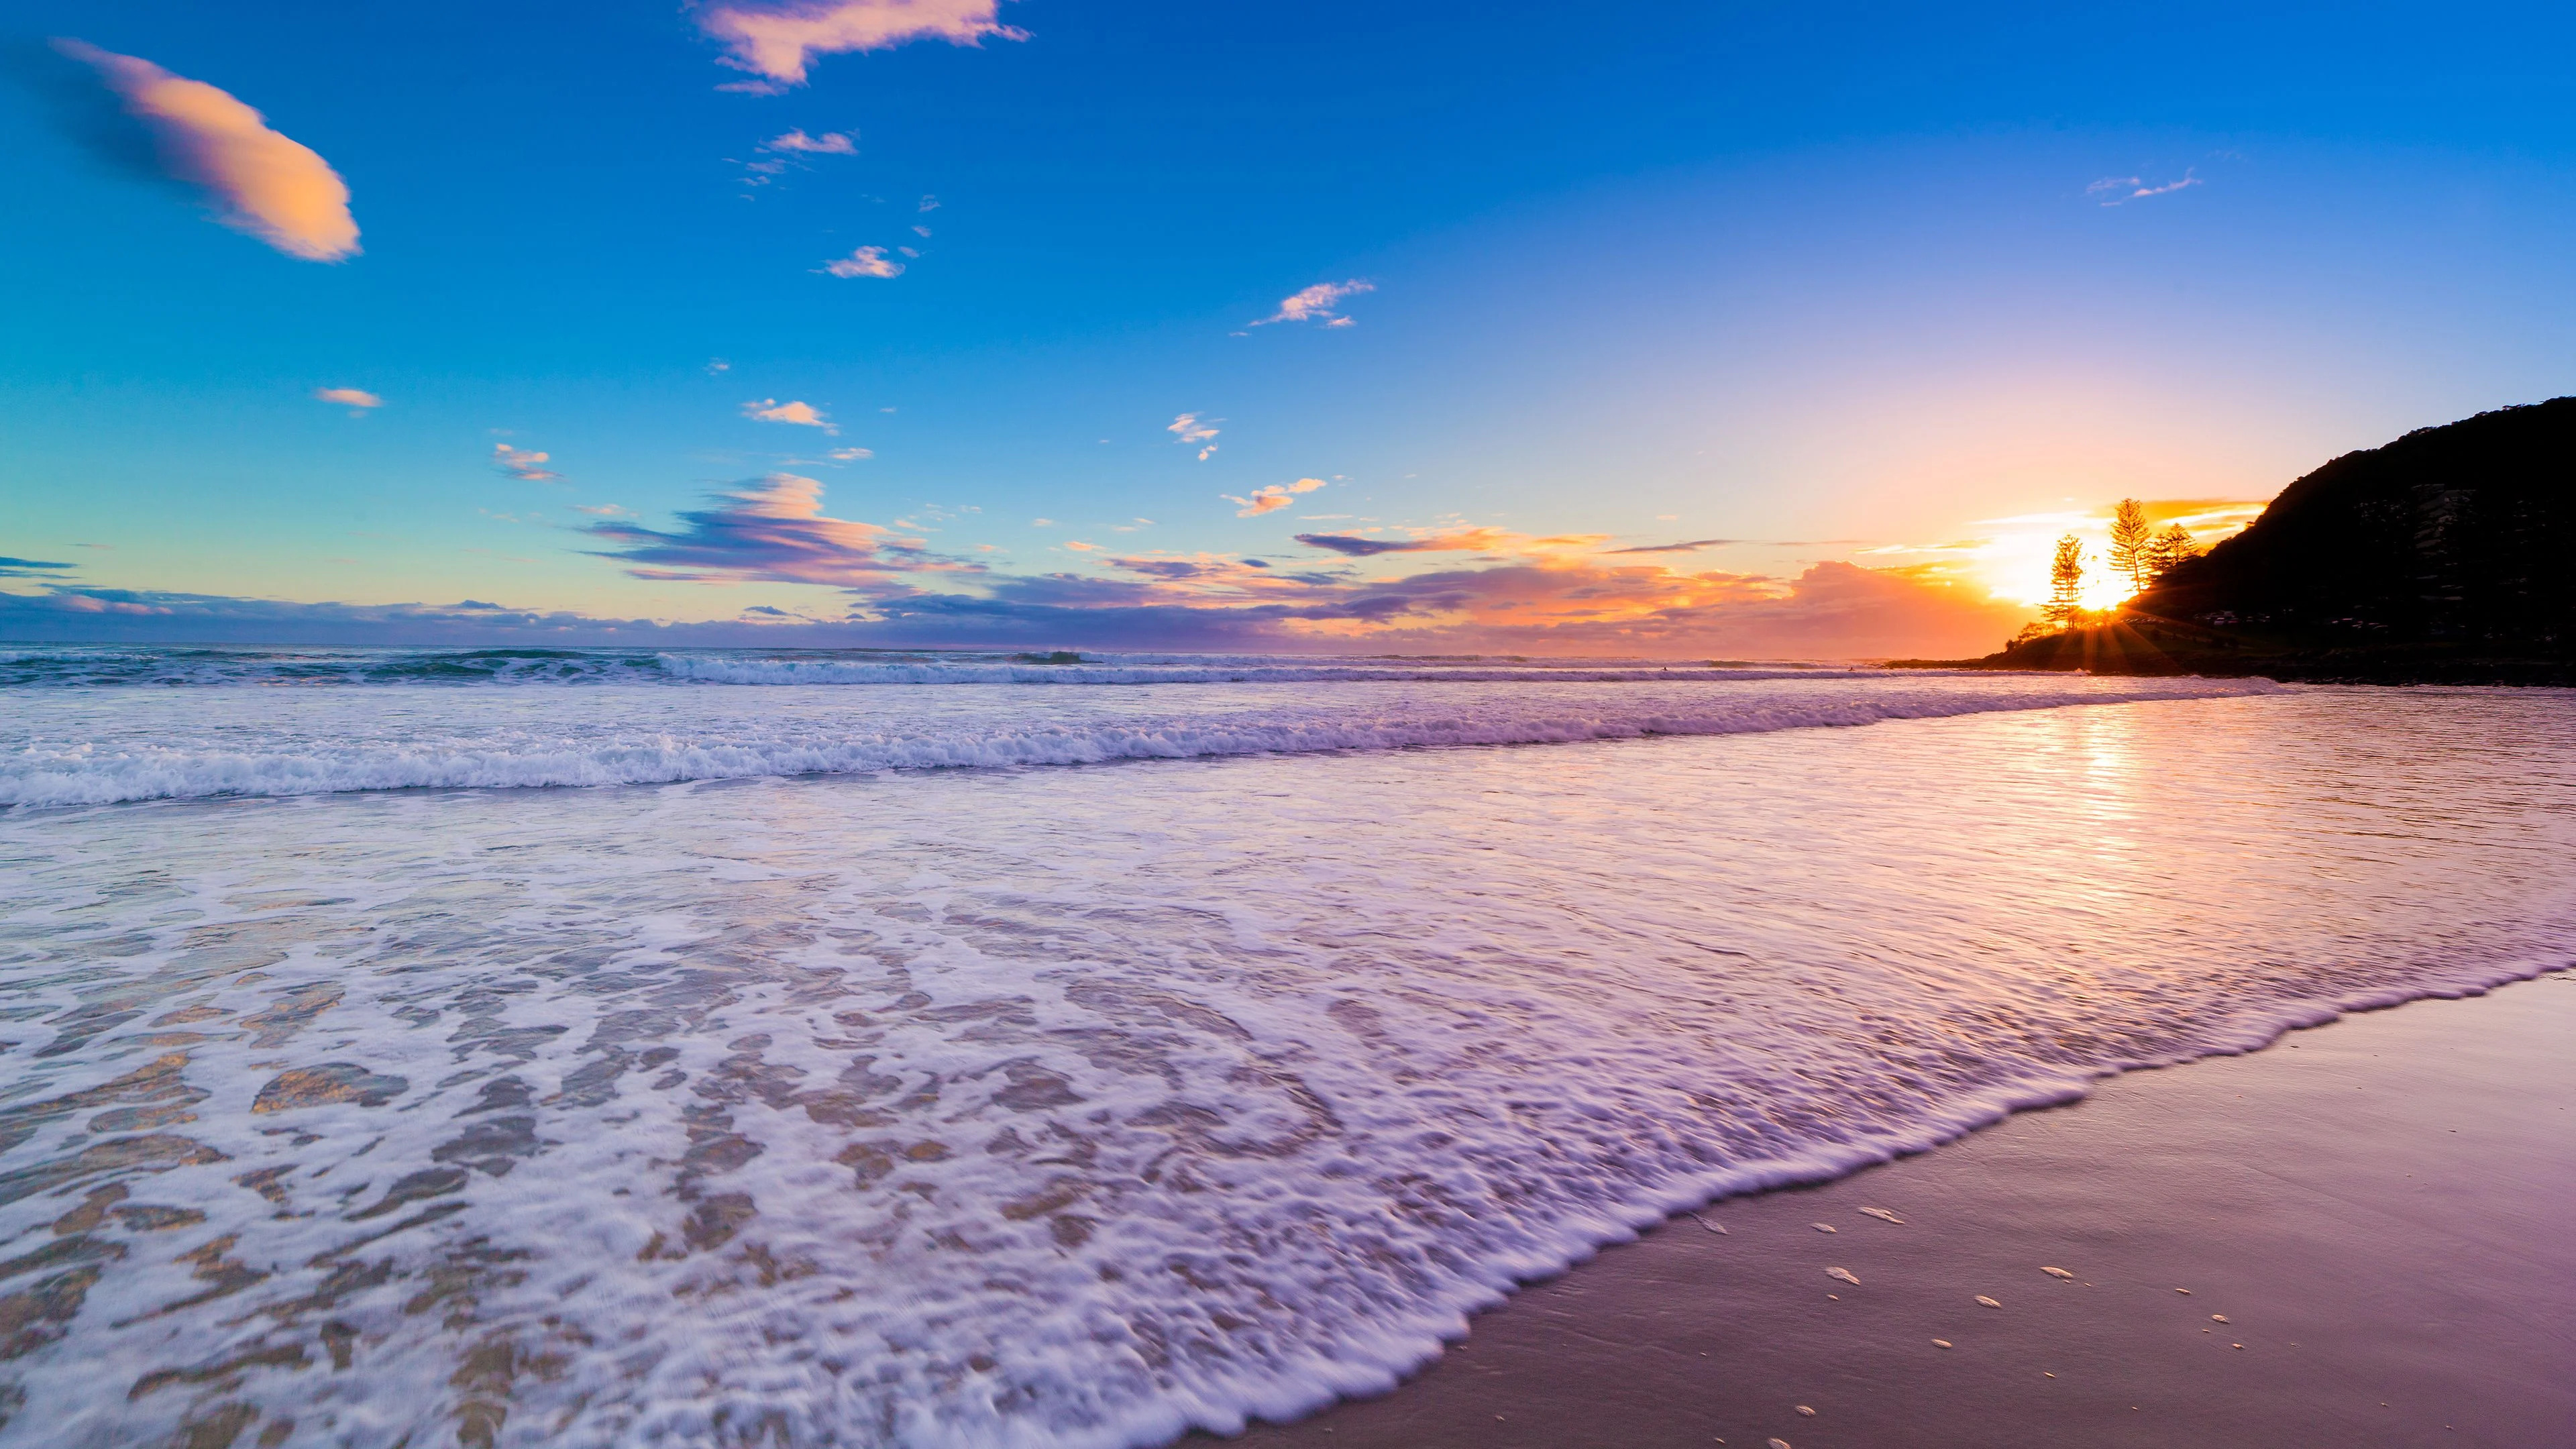 Laguna Beach, 3840x2160, Top beach backgrounds, Stunning visuals, 3840x2160 4K Desktop